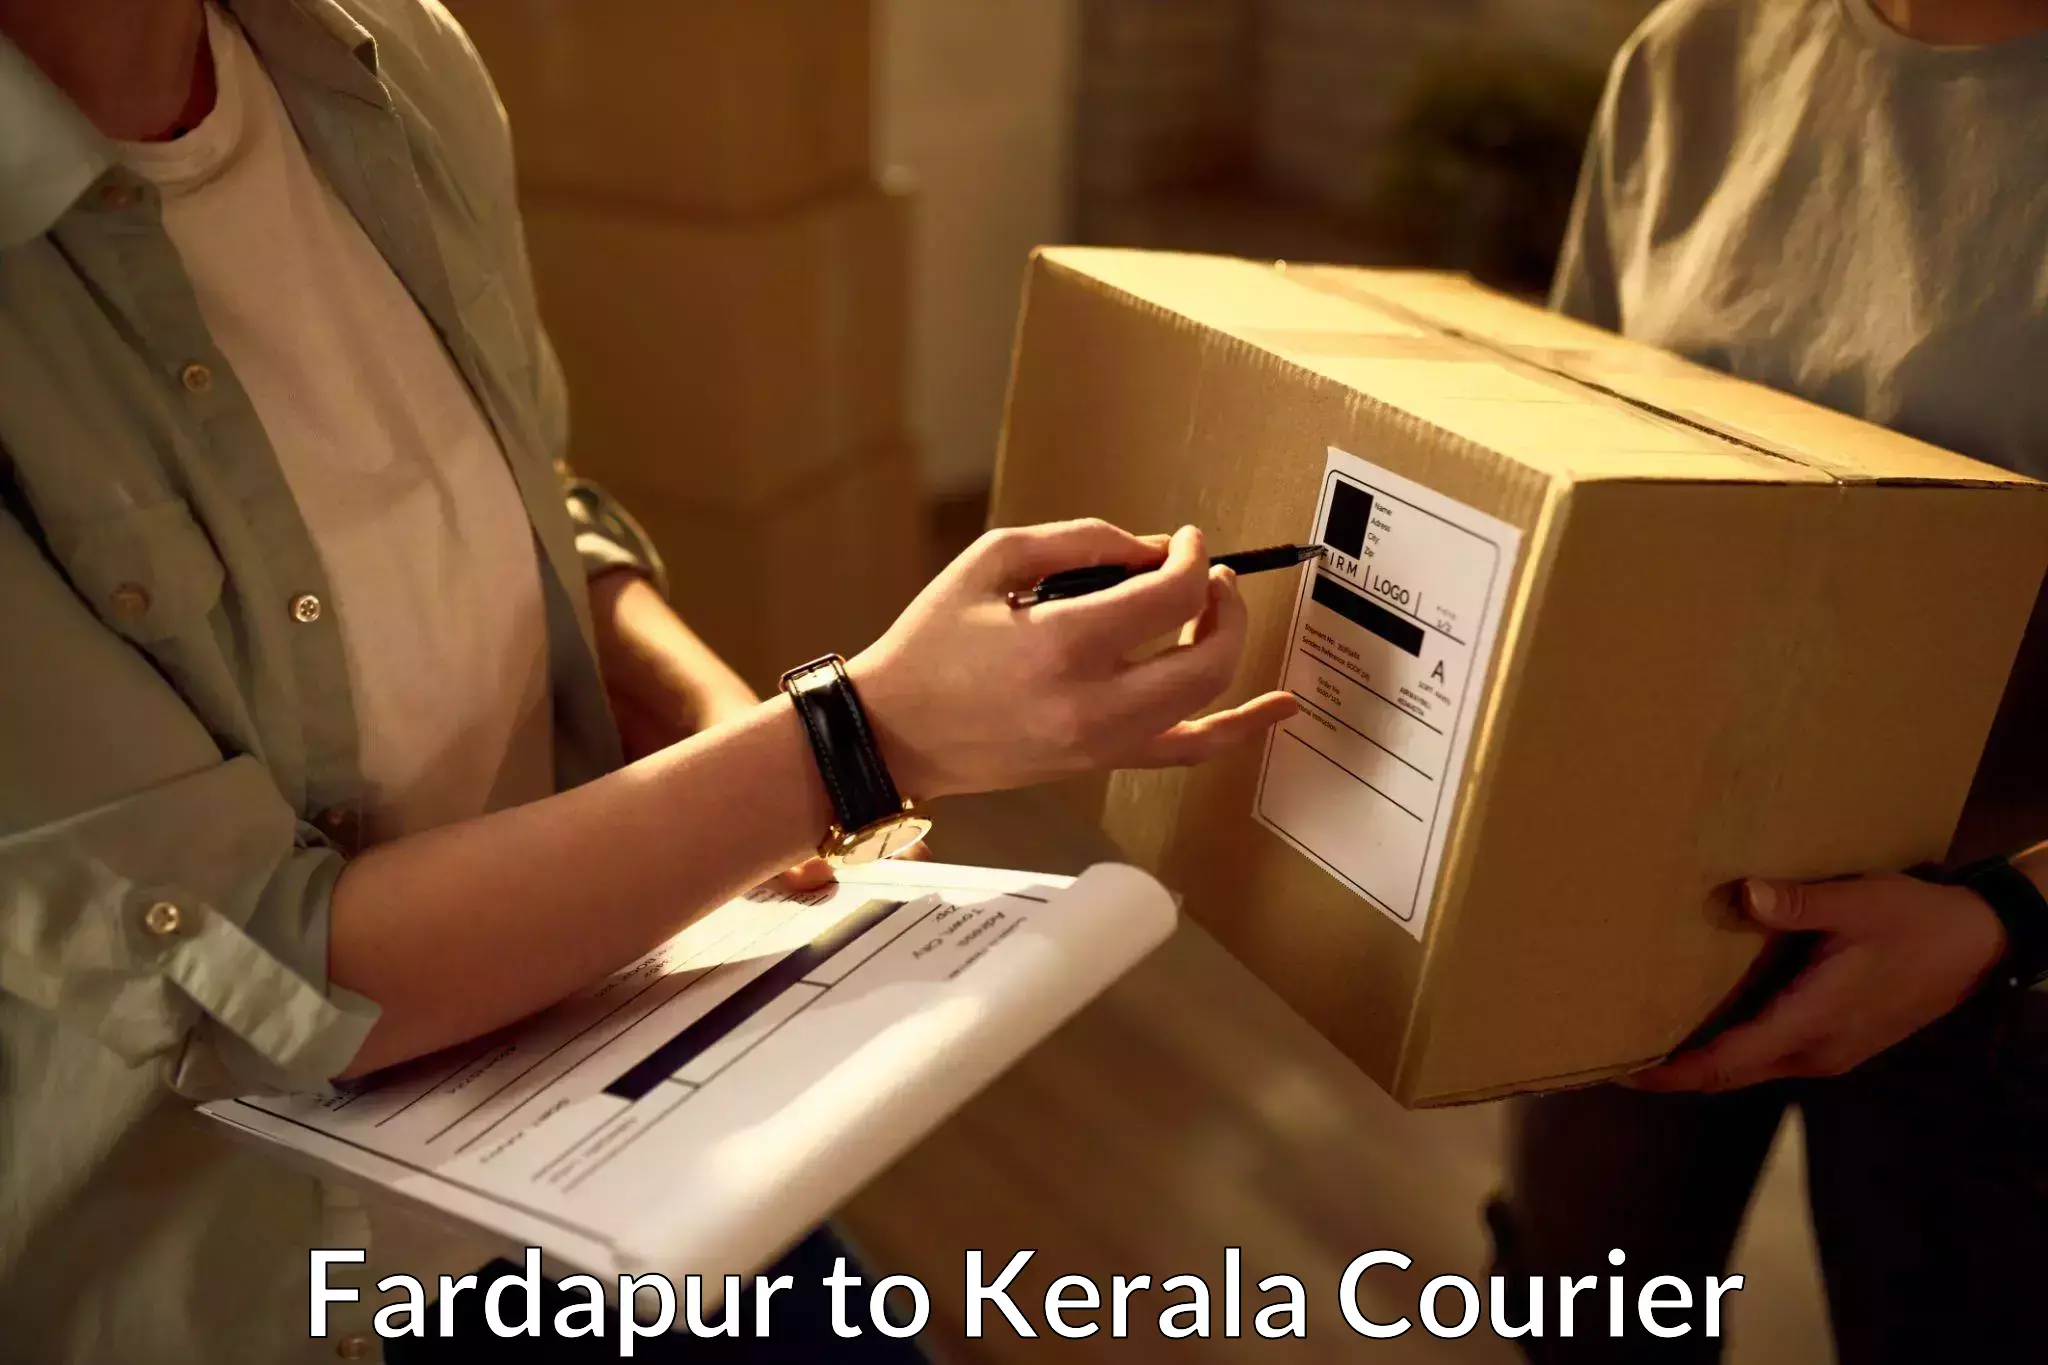 Cargo courier service Fardapur to Kerala